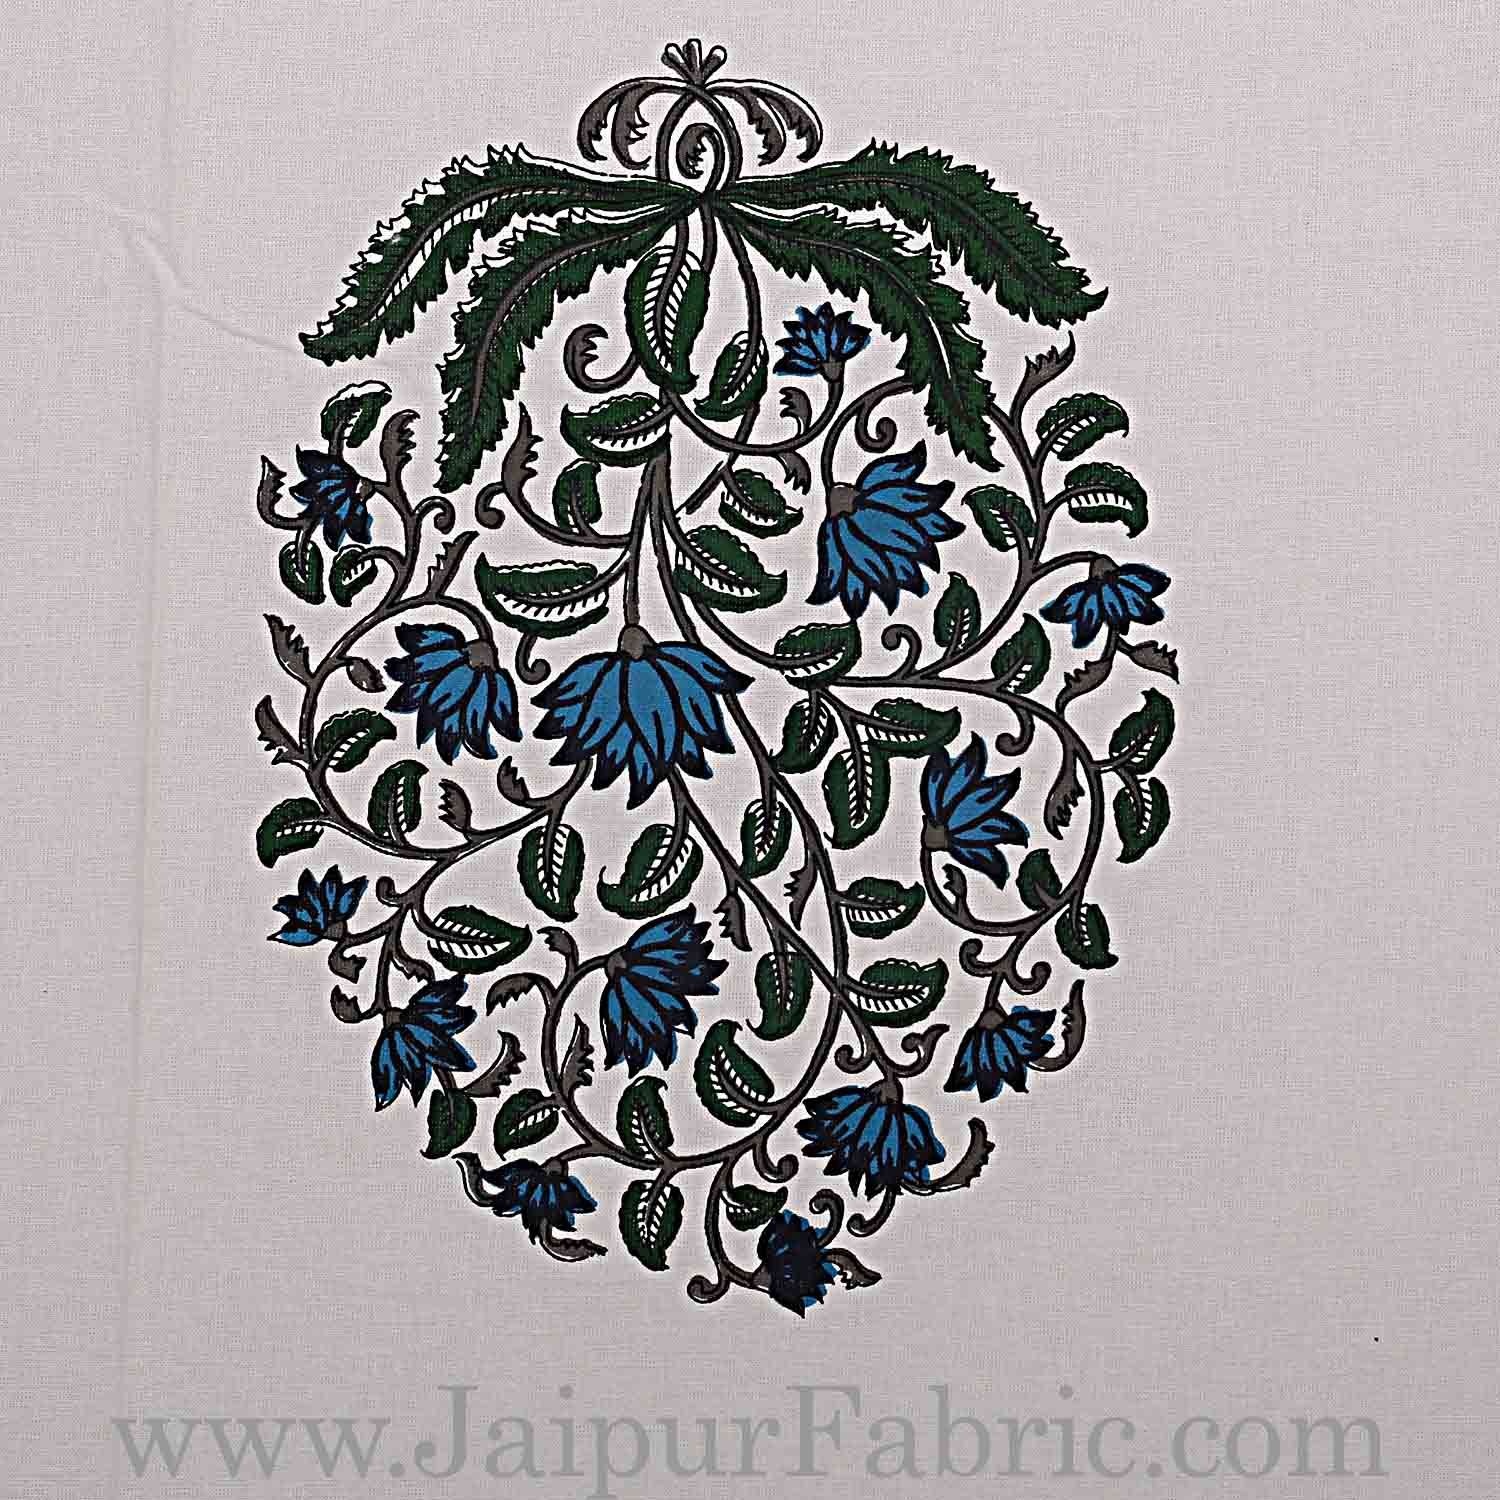 Double Bedsheet Grey  Border  Fine Cotton Blue Floral  Print